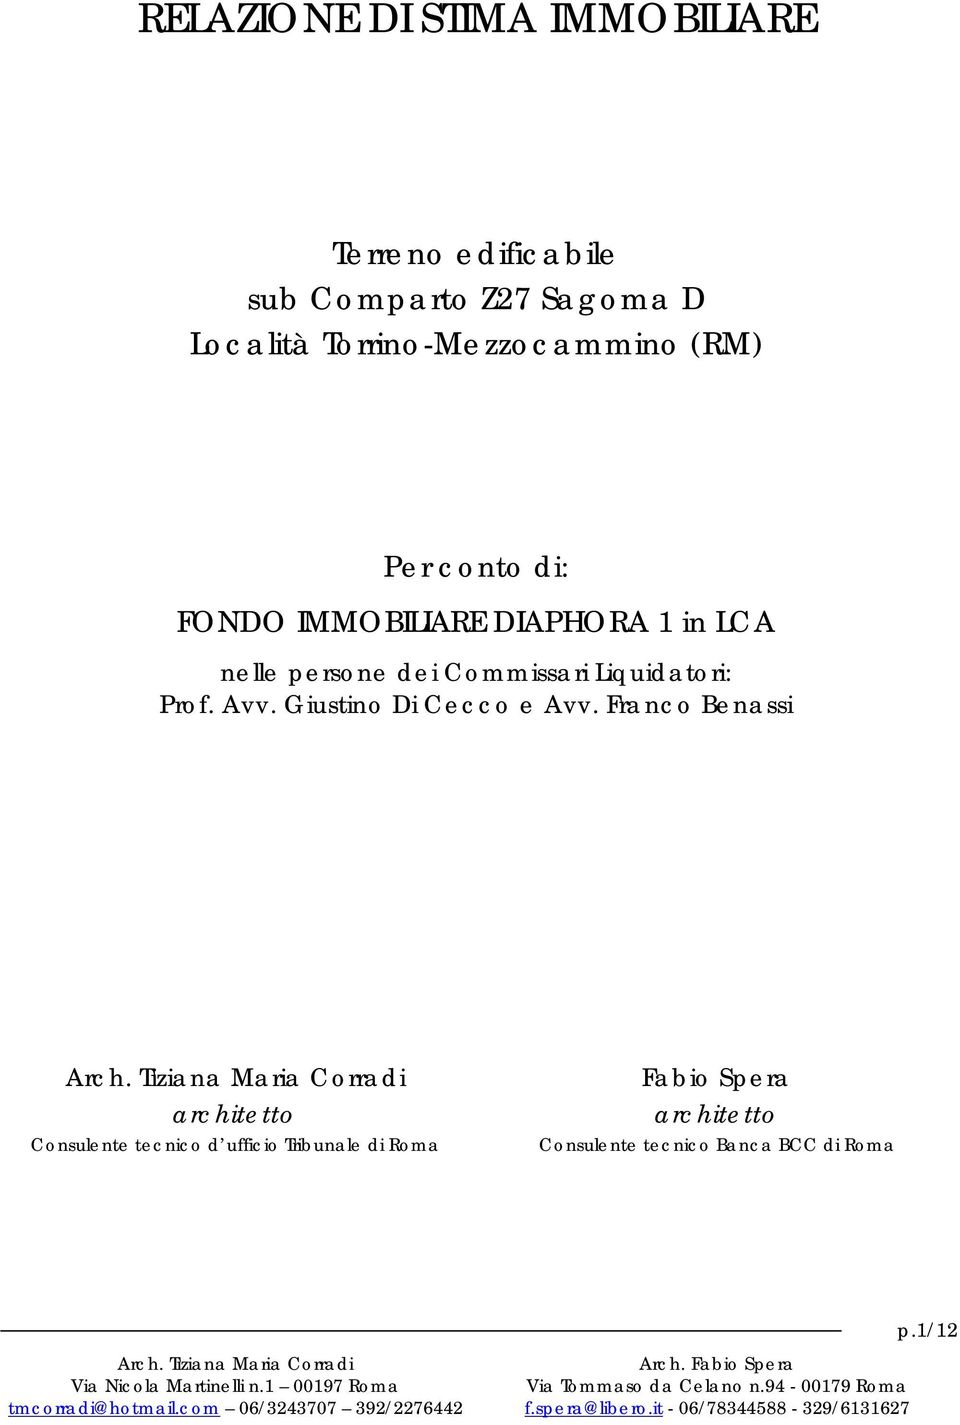 Commissari Liquidatori: Prof. Avv. Giustino Di Cecco e Avv.